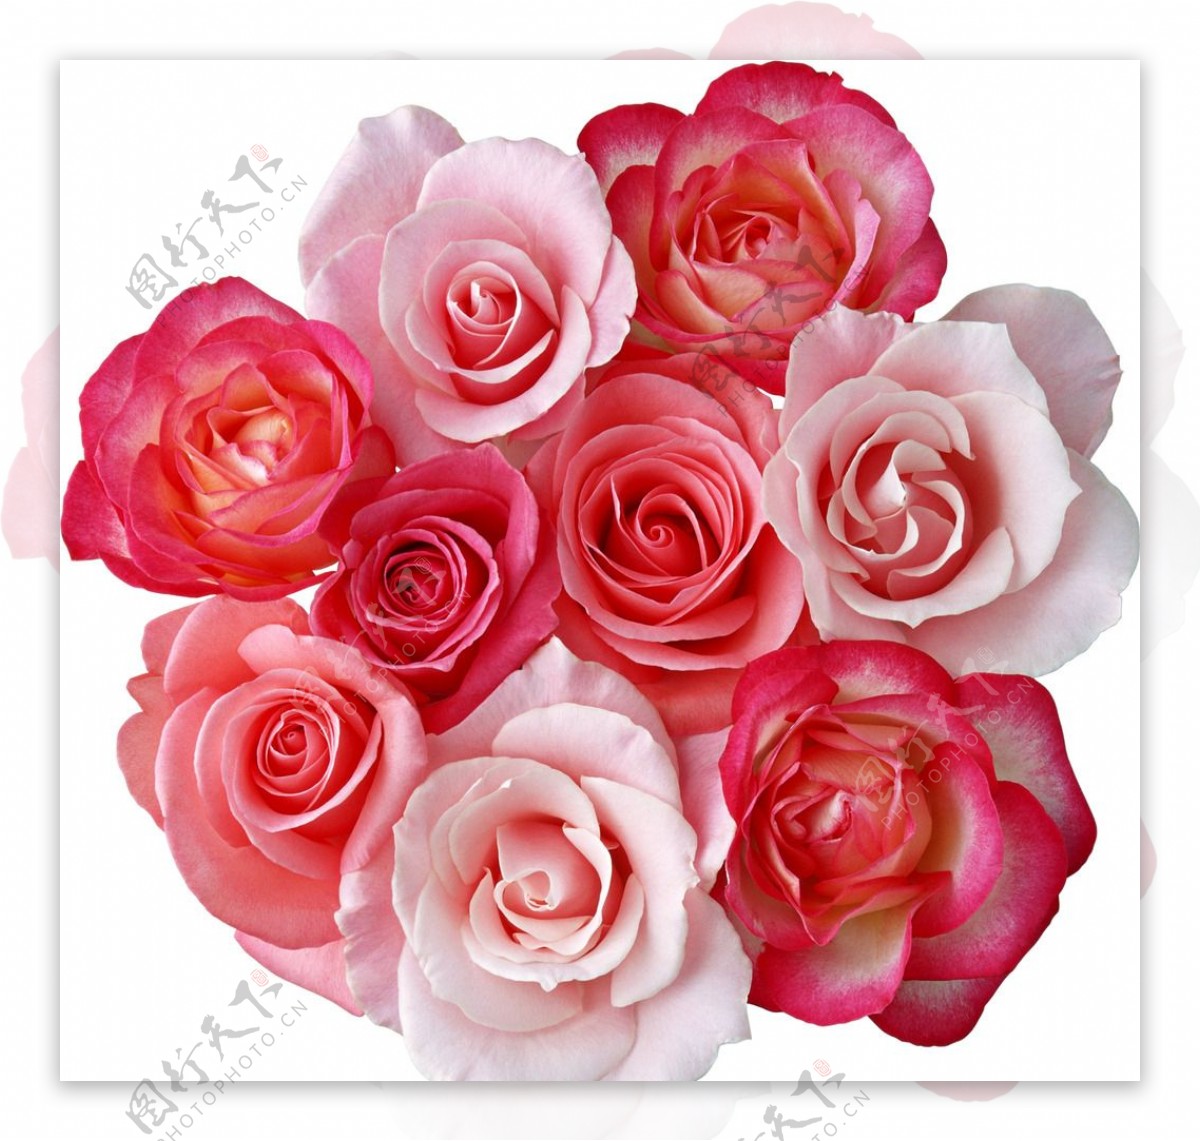 粉色玫瑰花-壁纸下载-www.pp3.cn